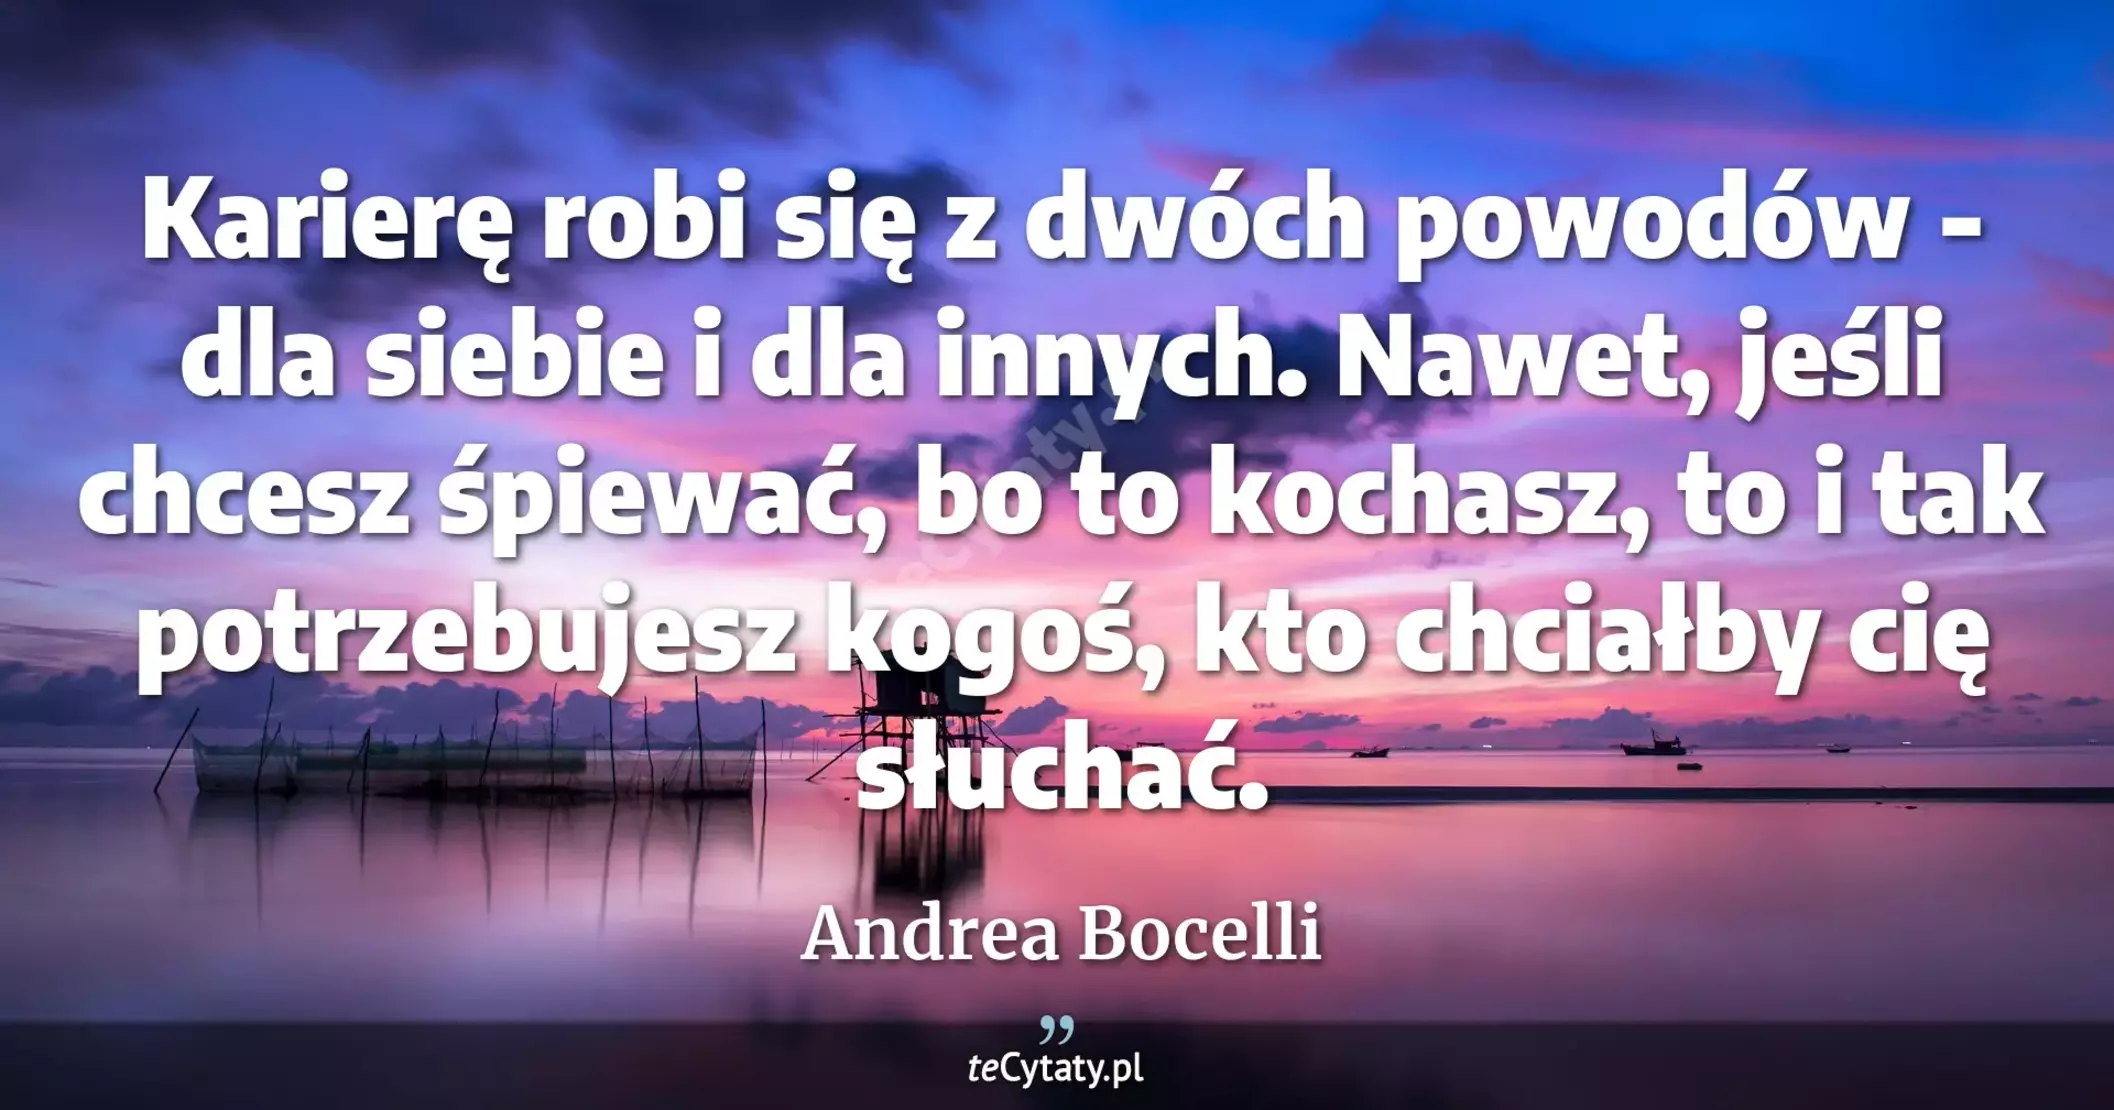 Karierę robi się z dwóch powodów - dla siebie i dla innych. Nawet, jeśli chcesz śpiewać, bo to kochasz, to i tak potrzebujesz kogoś, kto chciałby cię słuchać. - Andrea Bocelli